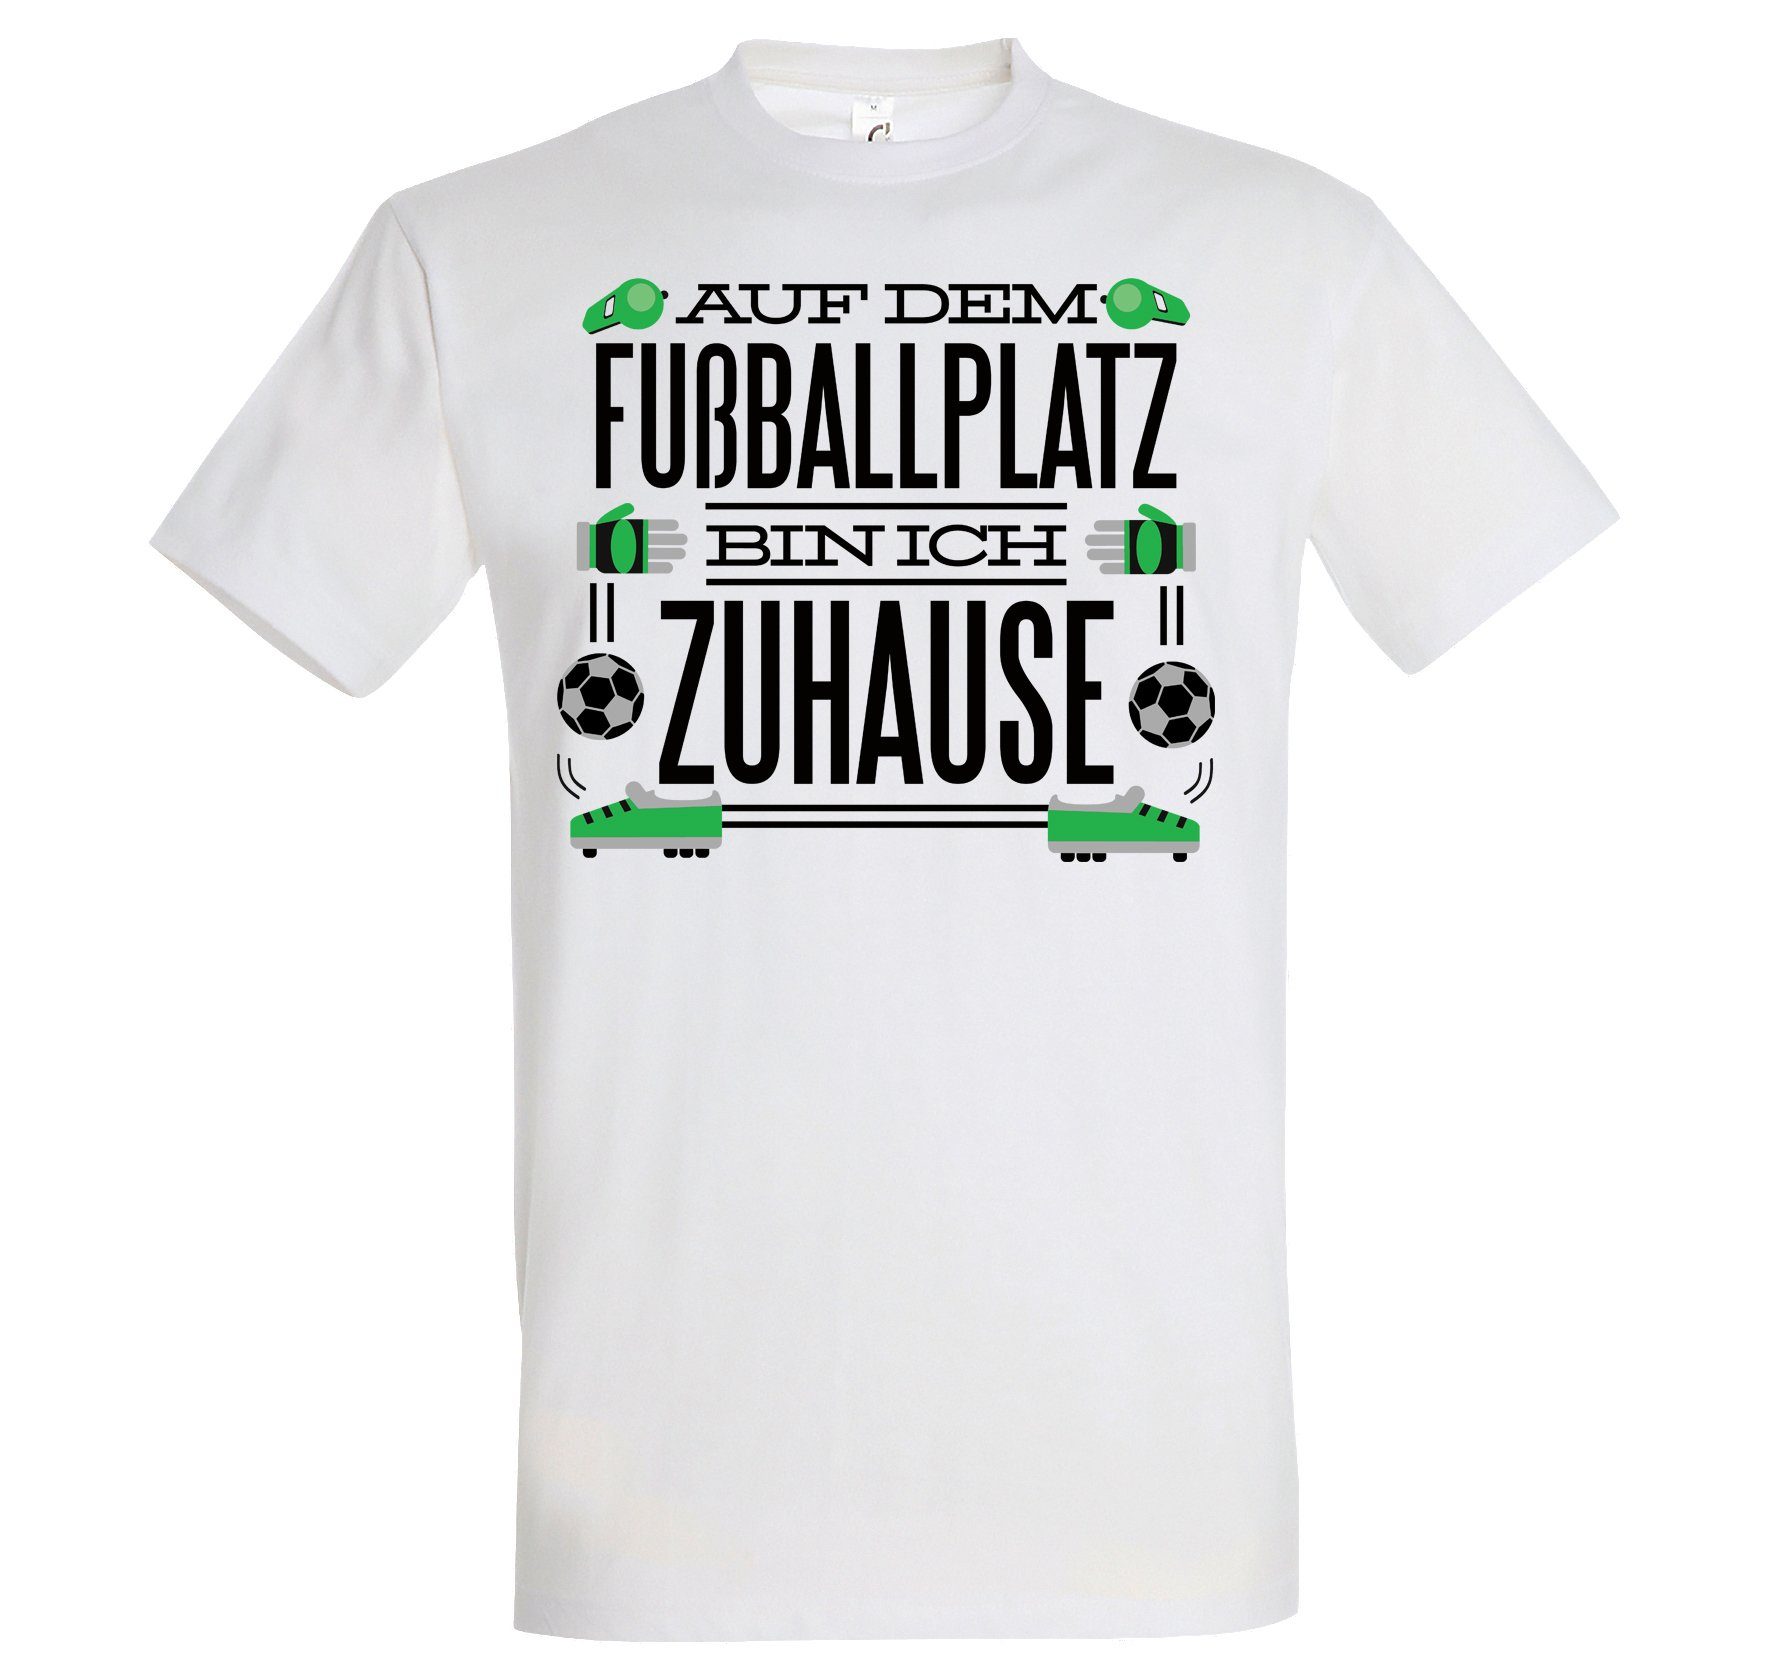 Youth Designz T-Shirt "Auf dem Fußballplatz bin ich Zuhause" Herren T-Shirt mit lustigem Spruch